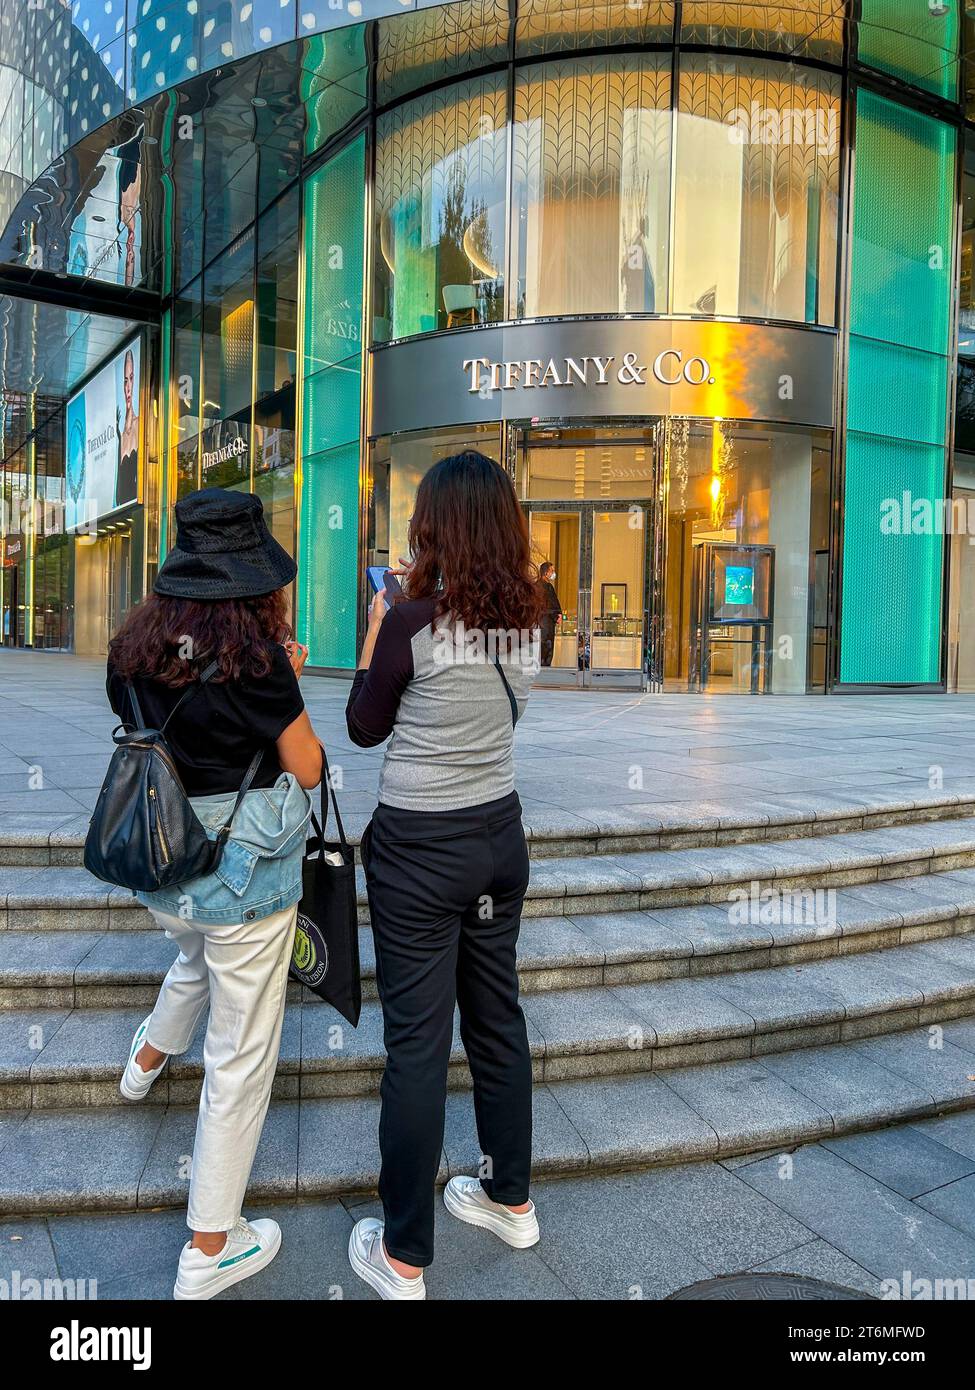 Shanghai, Cina, Street Scene, quartiere degli affari, due adolescenti cinesi da dietro, che guardano gli smartphone, Front of Tiffany & Co. Gioielleria, centro città, capitalismo cinese Foto Stock